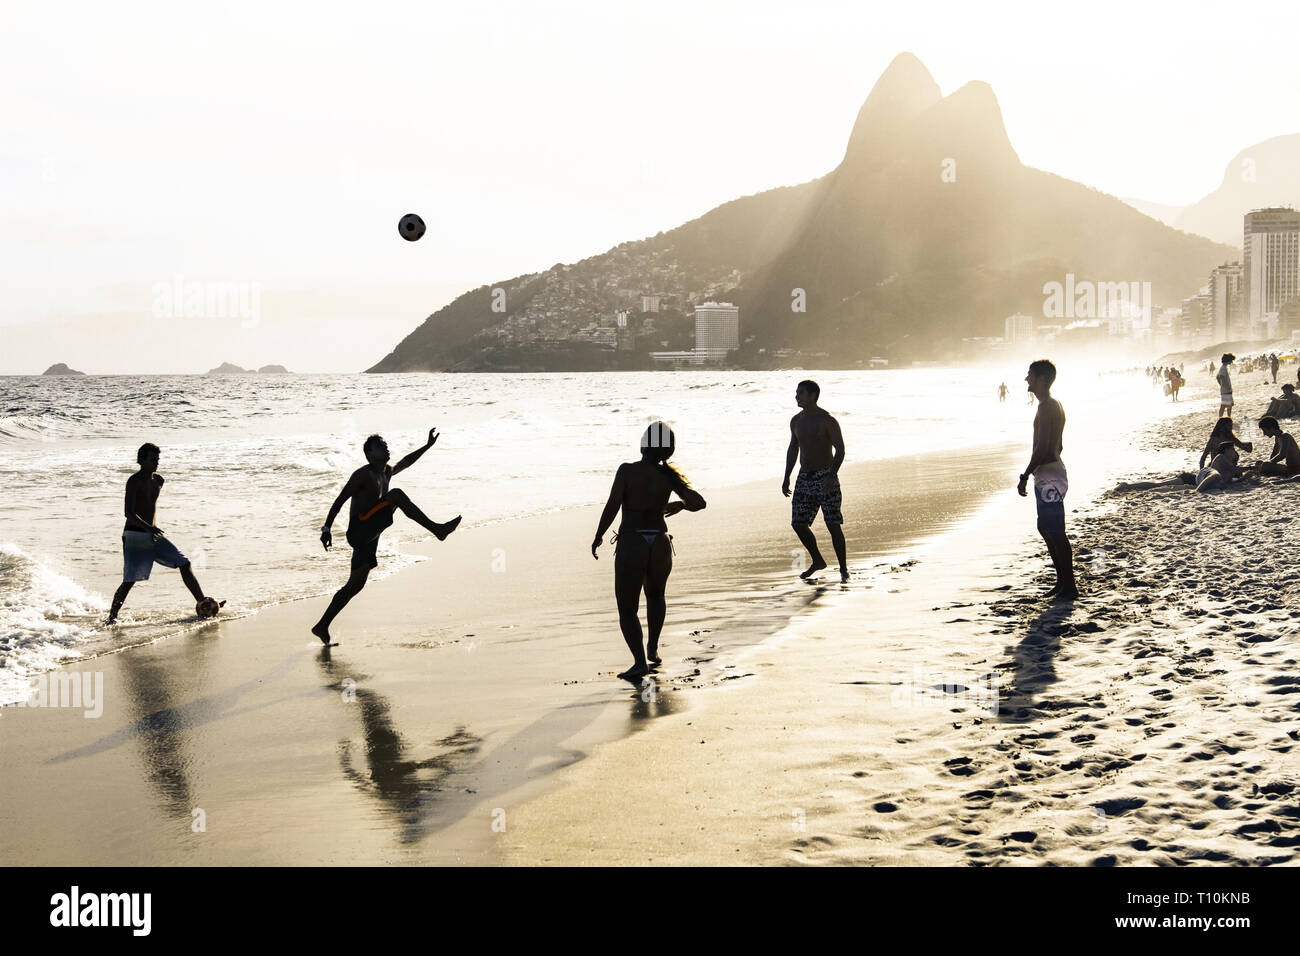 RIO DE JANEIRO, Brésil - 24 février 2015 : un groupe de Brésiliens jouant sur le rivage de la plage d'Ipanema, avec la célèbre montagne Dois Irmãos derrière eux Banque D'Images